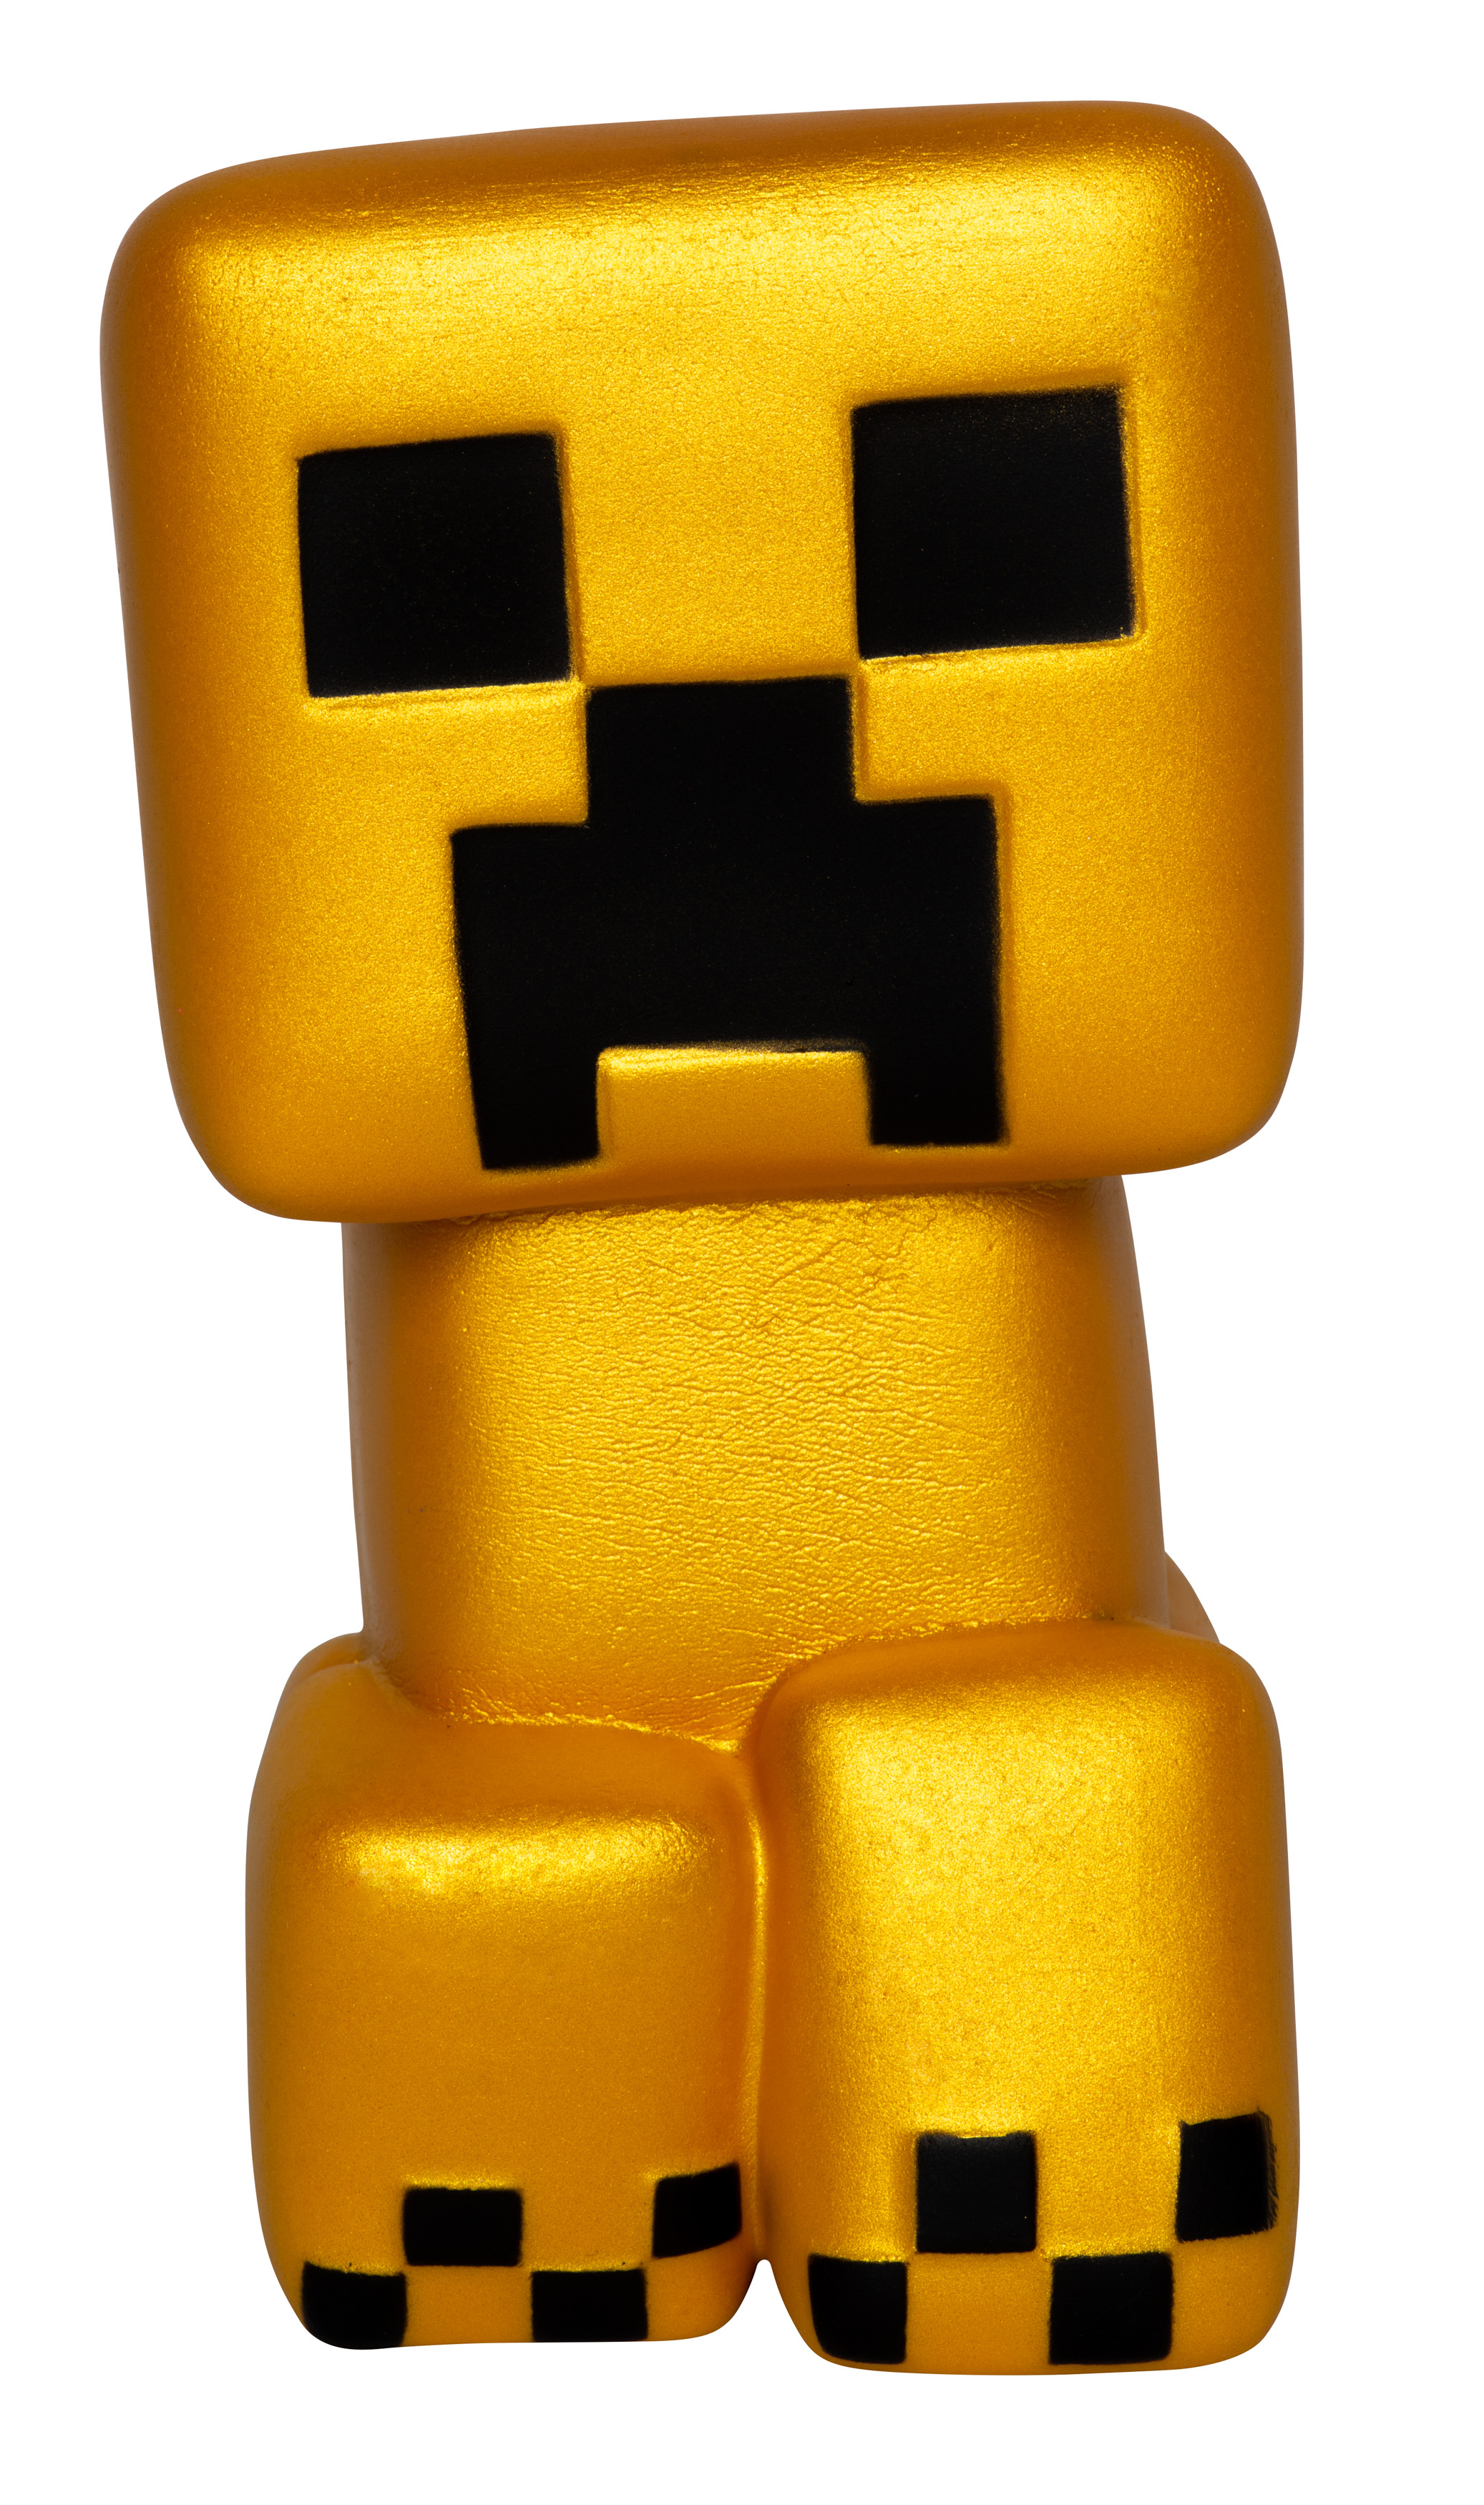 Minecraft SquishMe - Gold Creeper